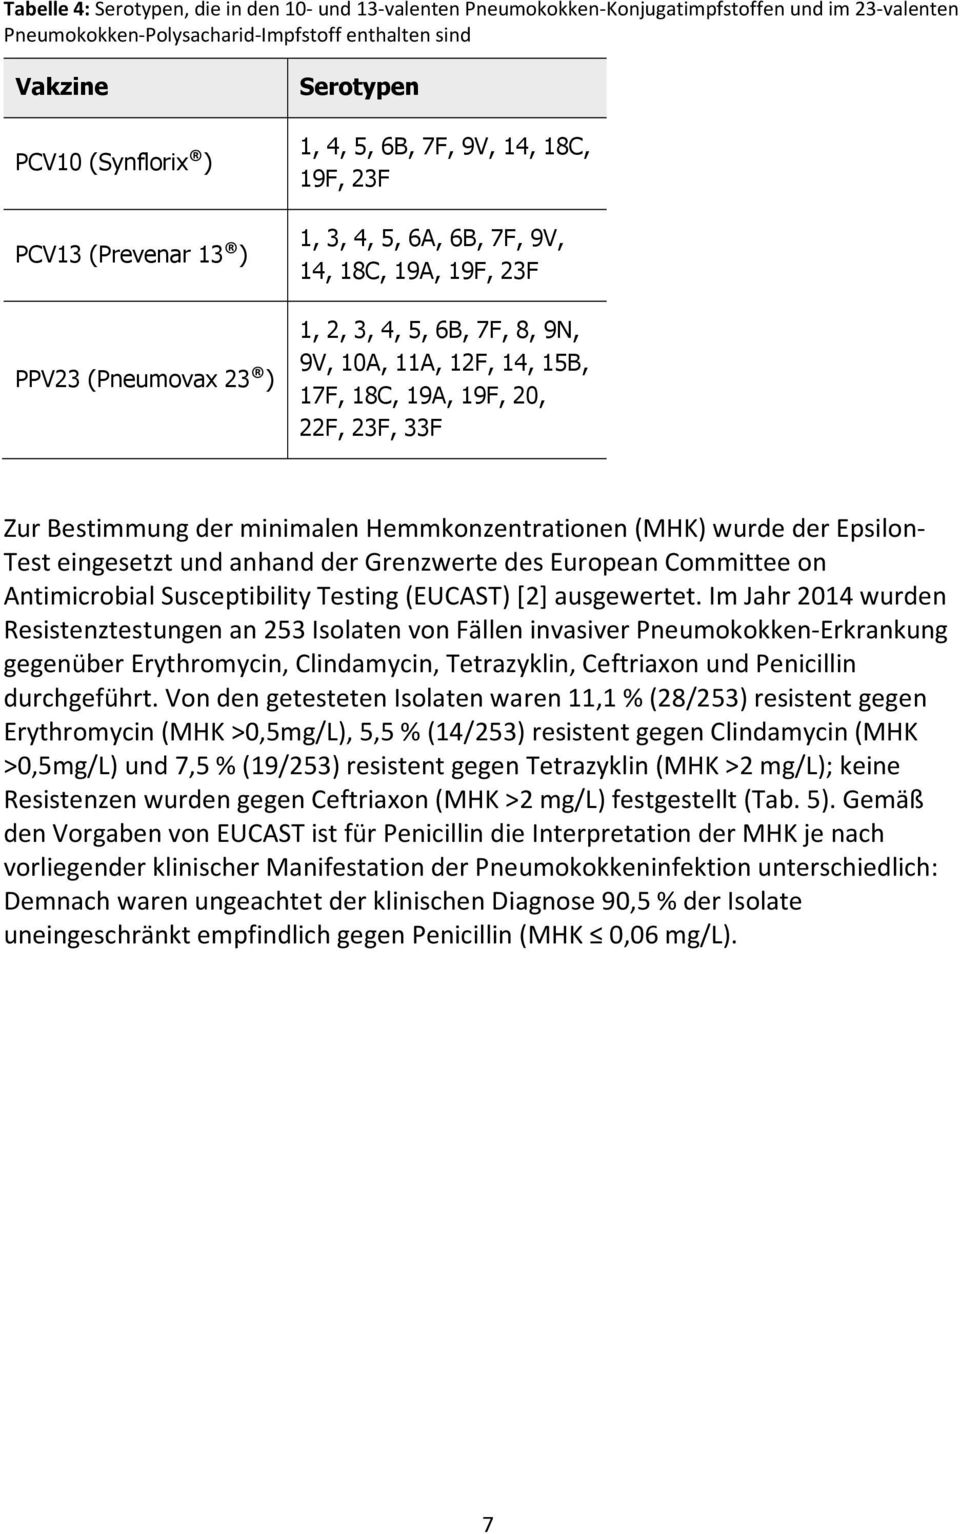 19F, 20, 22F, 23F, 33F Zur Bestimmung der minimalen Hemmkonzentrationen (MHK) wurde der Epsilon- Test eingesetzt und anhand der Grenzwerte des European Committee on Antimicrobial Susceptibility